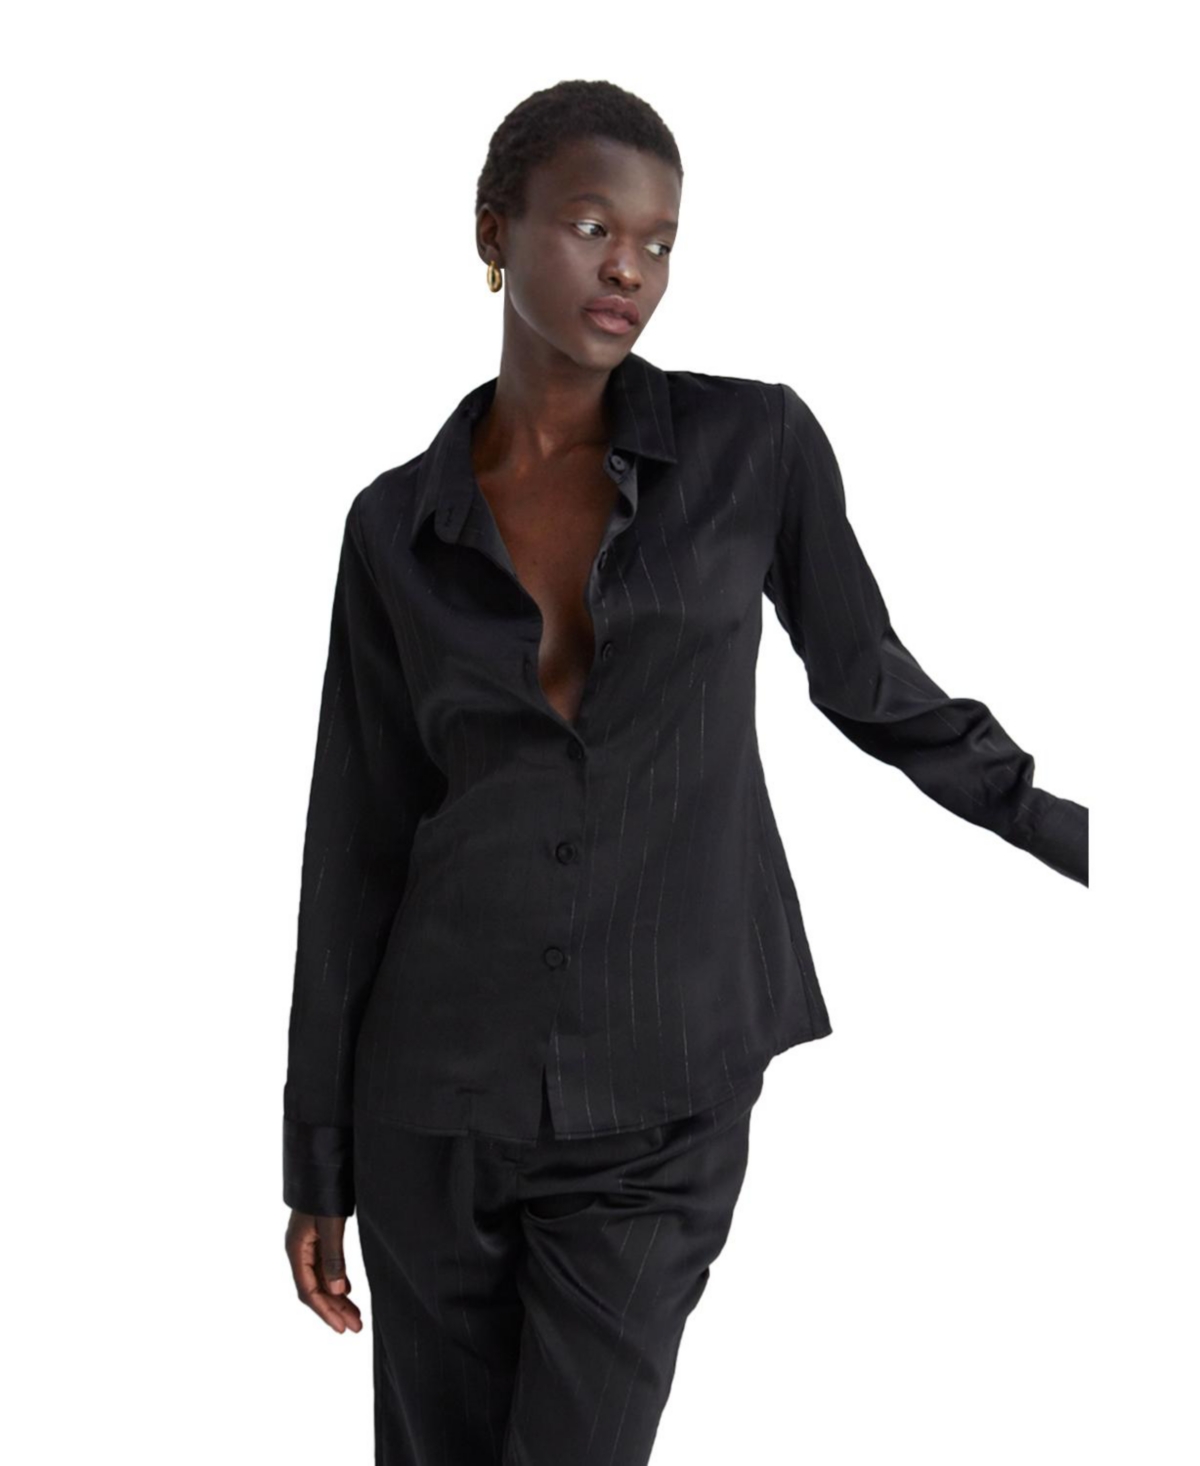 Women's Maurice Satin Lurex Pinstripe Button Up Top - Black